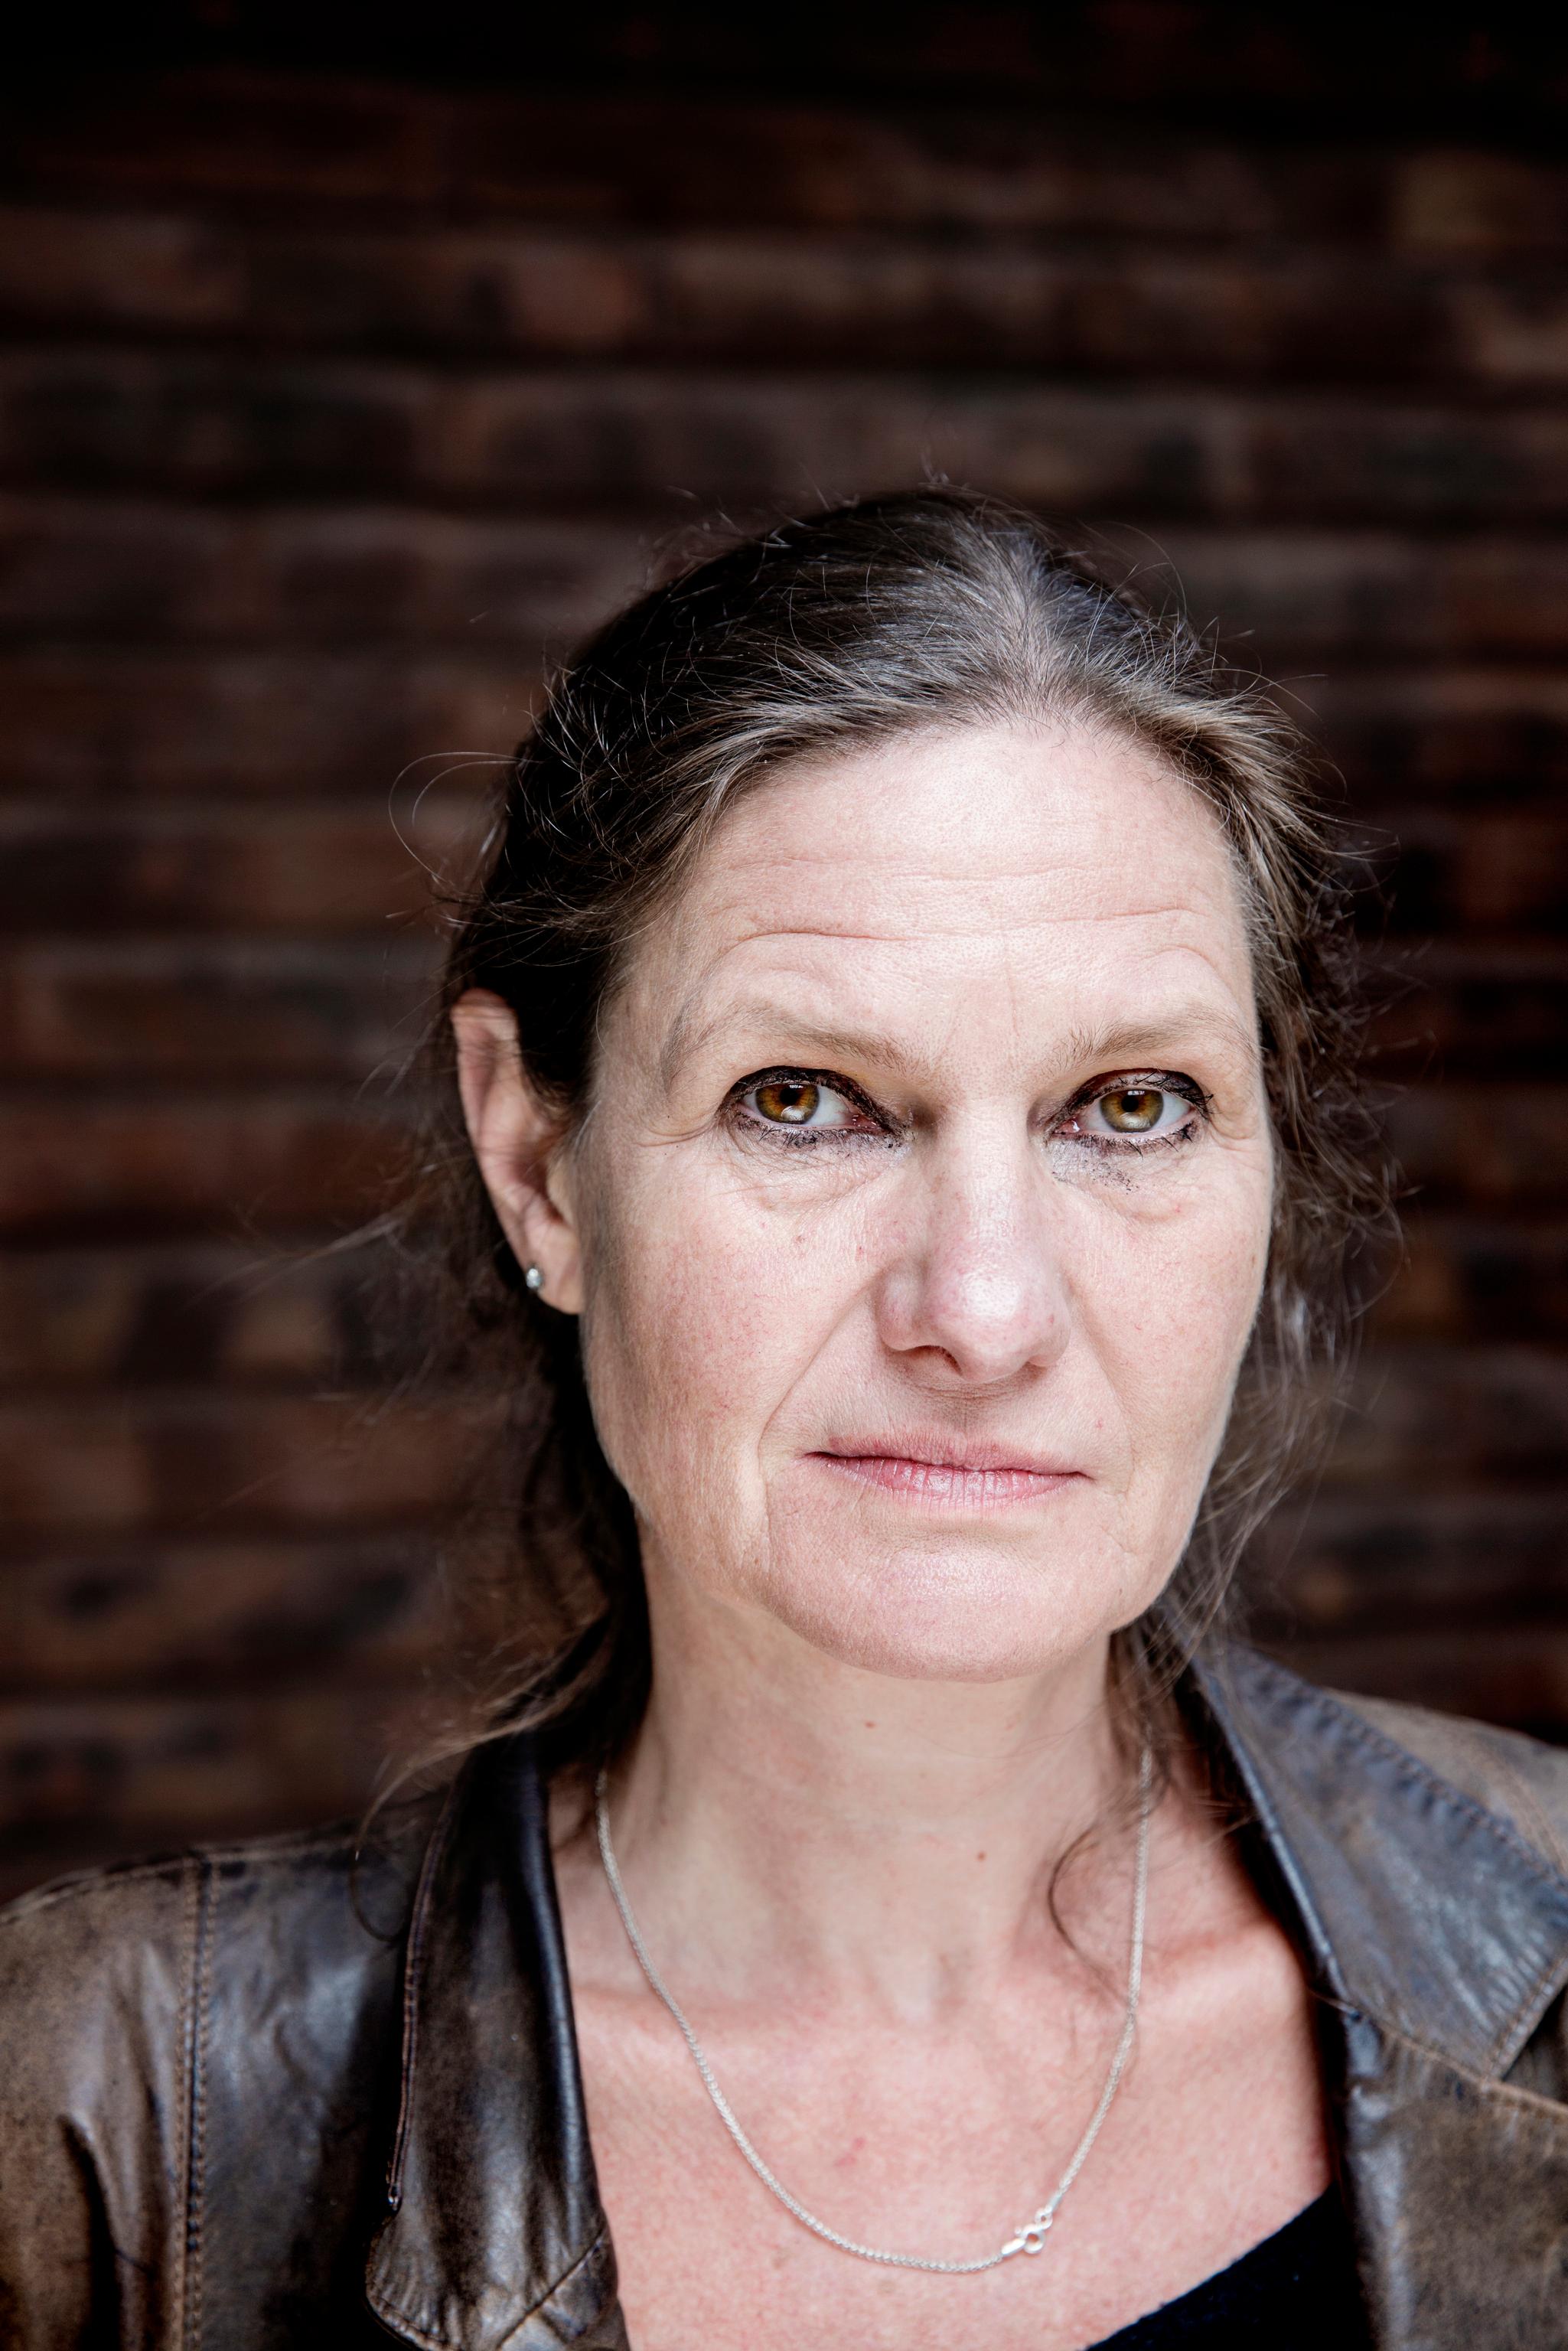 Oslo. 28.07.2015. Eva Therese Bjørneboe er en norsk redaktør og teateranmelder. Foto: Fredrik Bjerknes